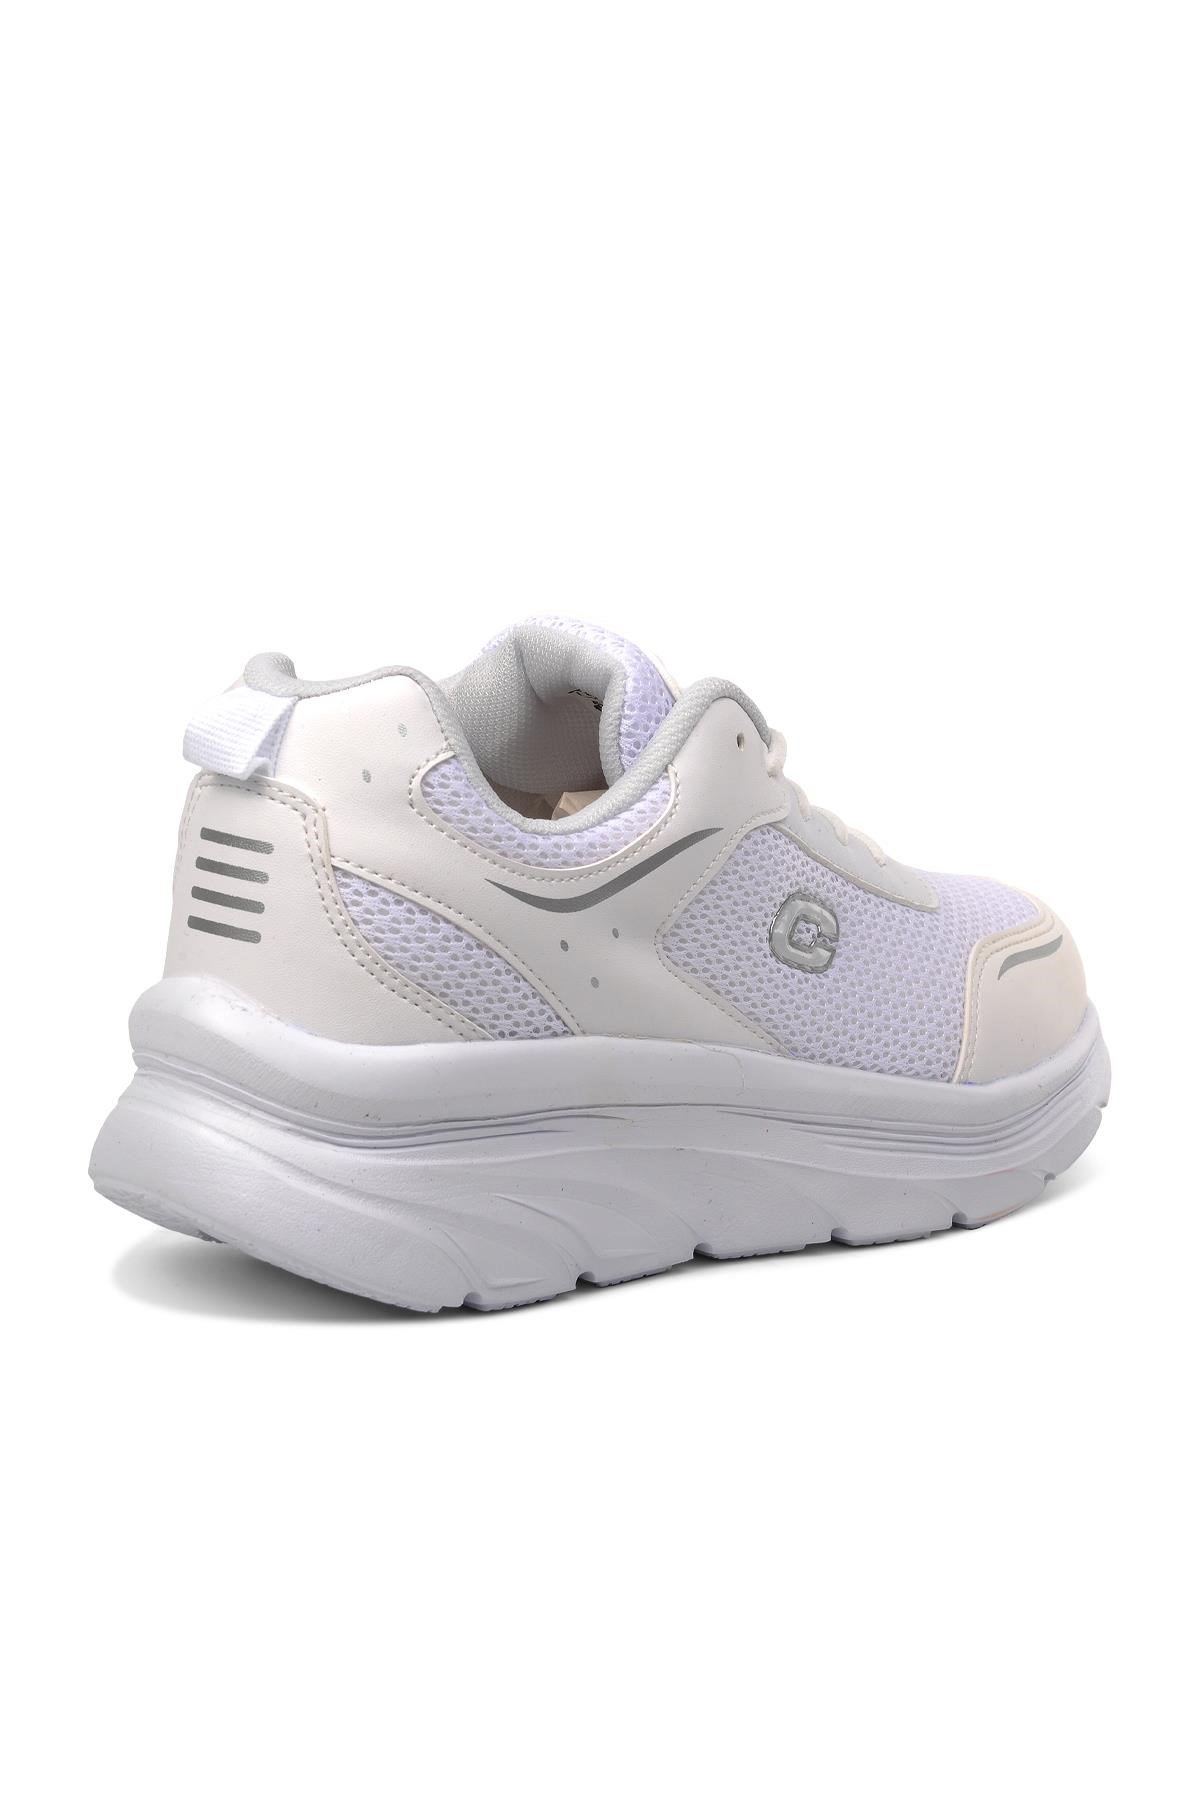 Conpax 5202 Beyaz Kadın Spor Ayakkabı - Ayakmod